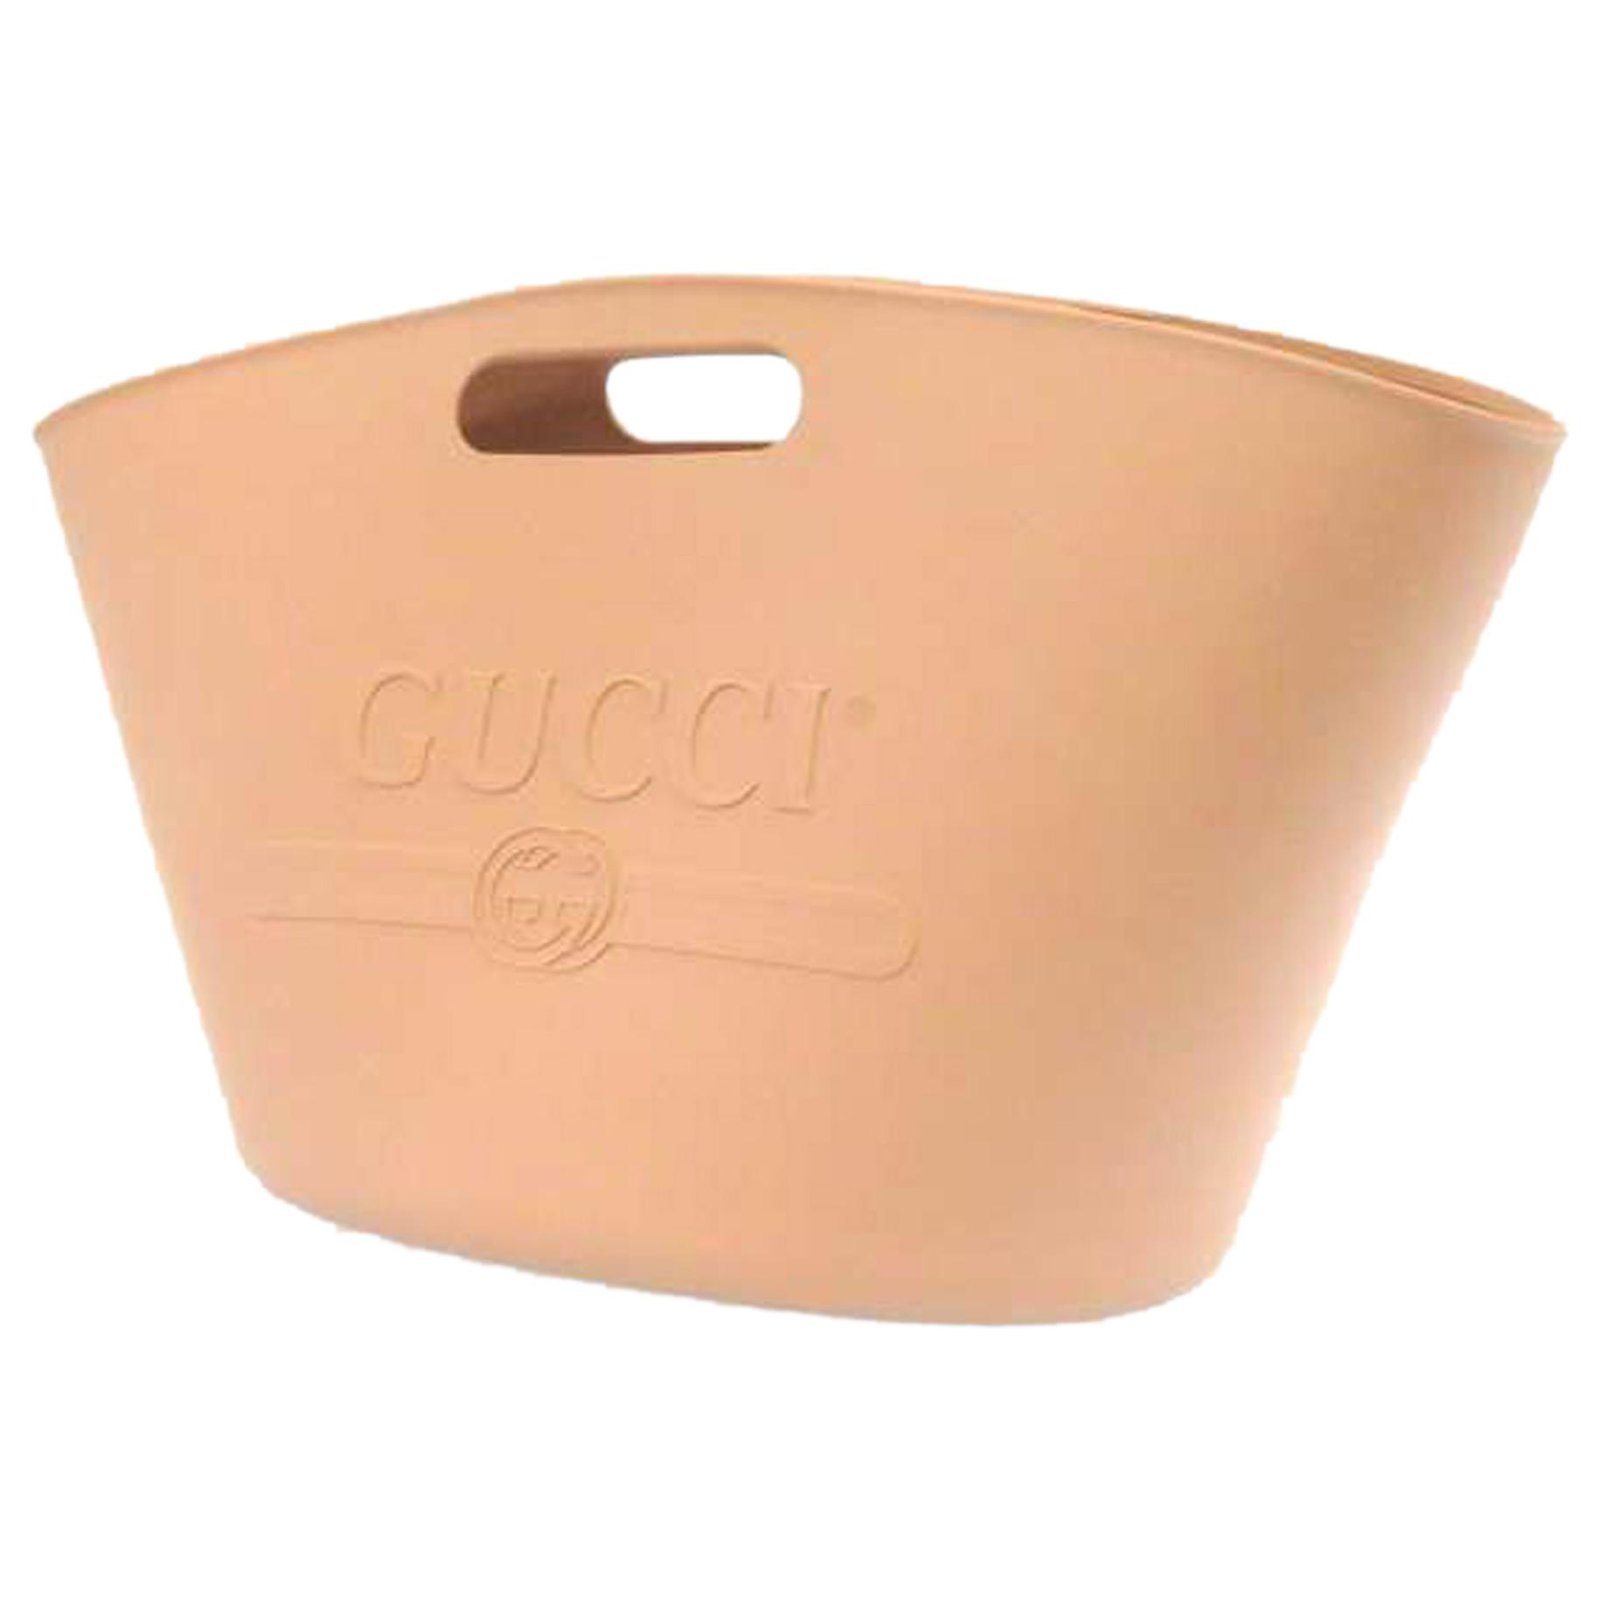 rubber gucci bag